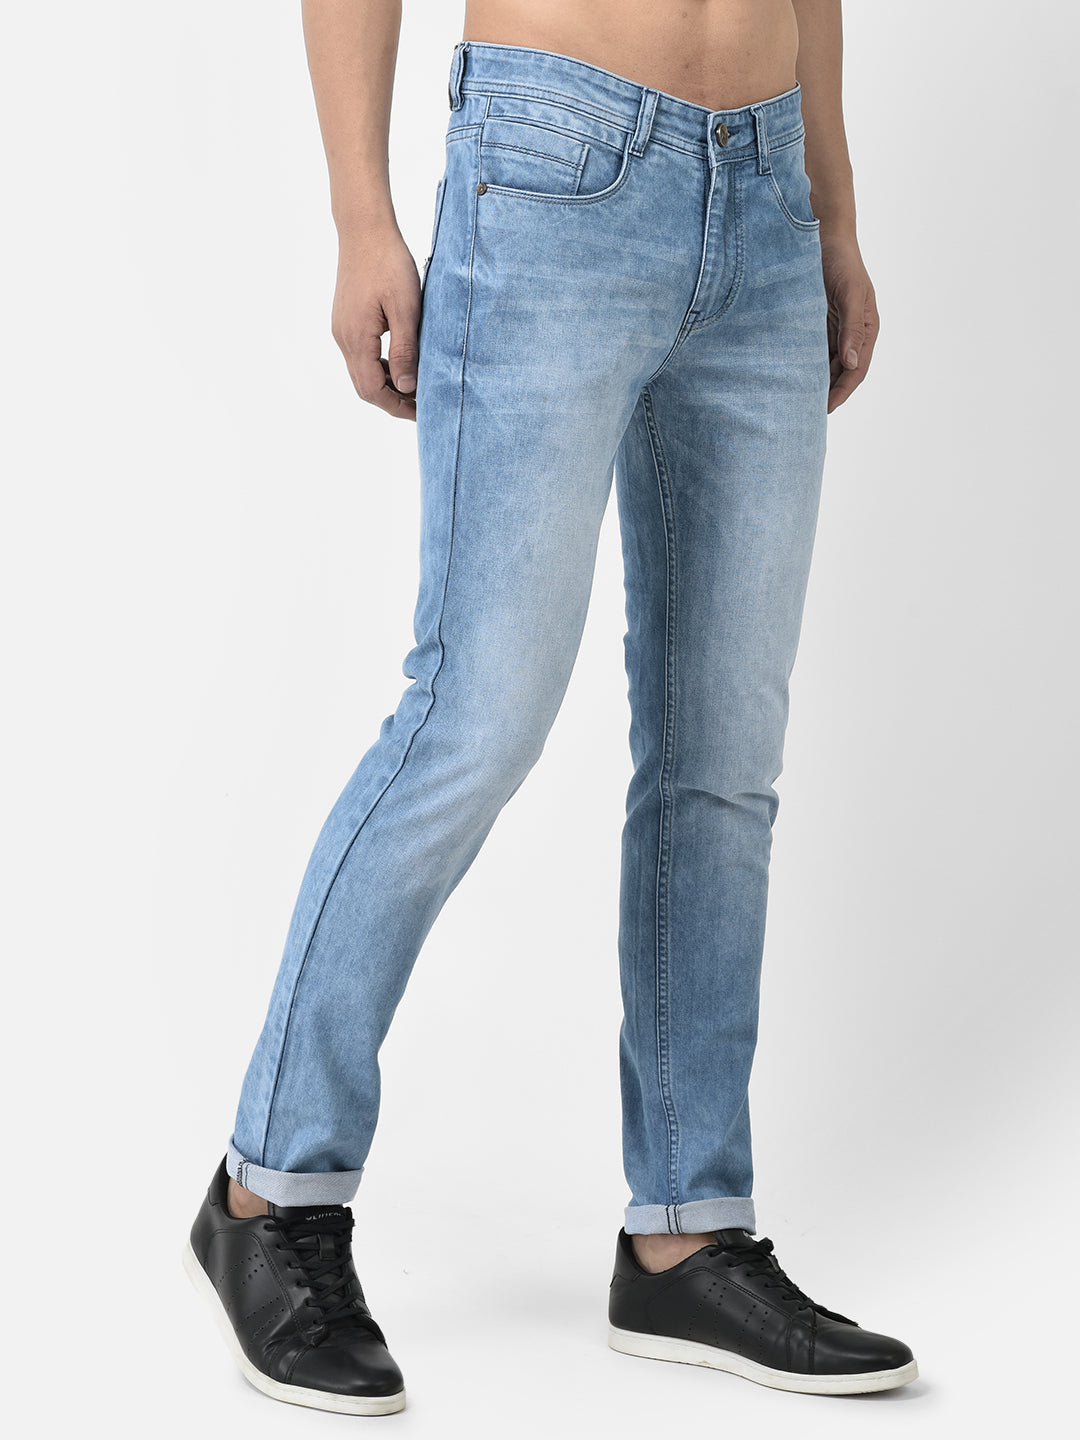 Karl Lagerfeld Paris Slim Fit Light Wash Stretch Jeans | Dillard's